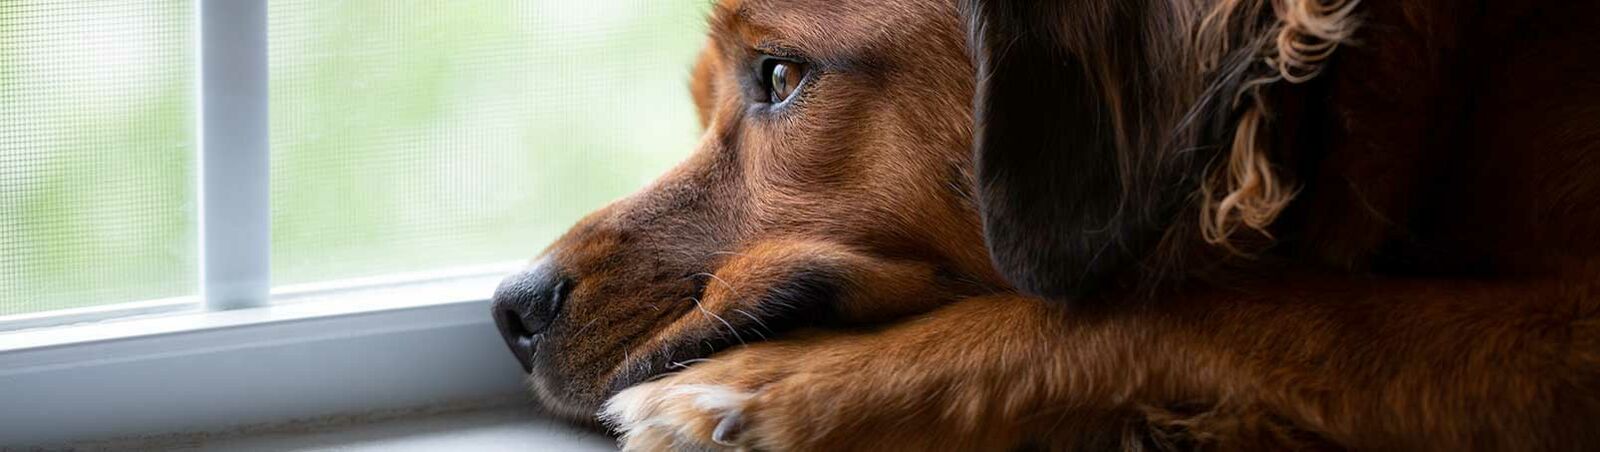 Ein Hund schaut traurig aus dem Fenster.